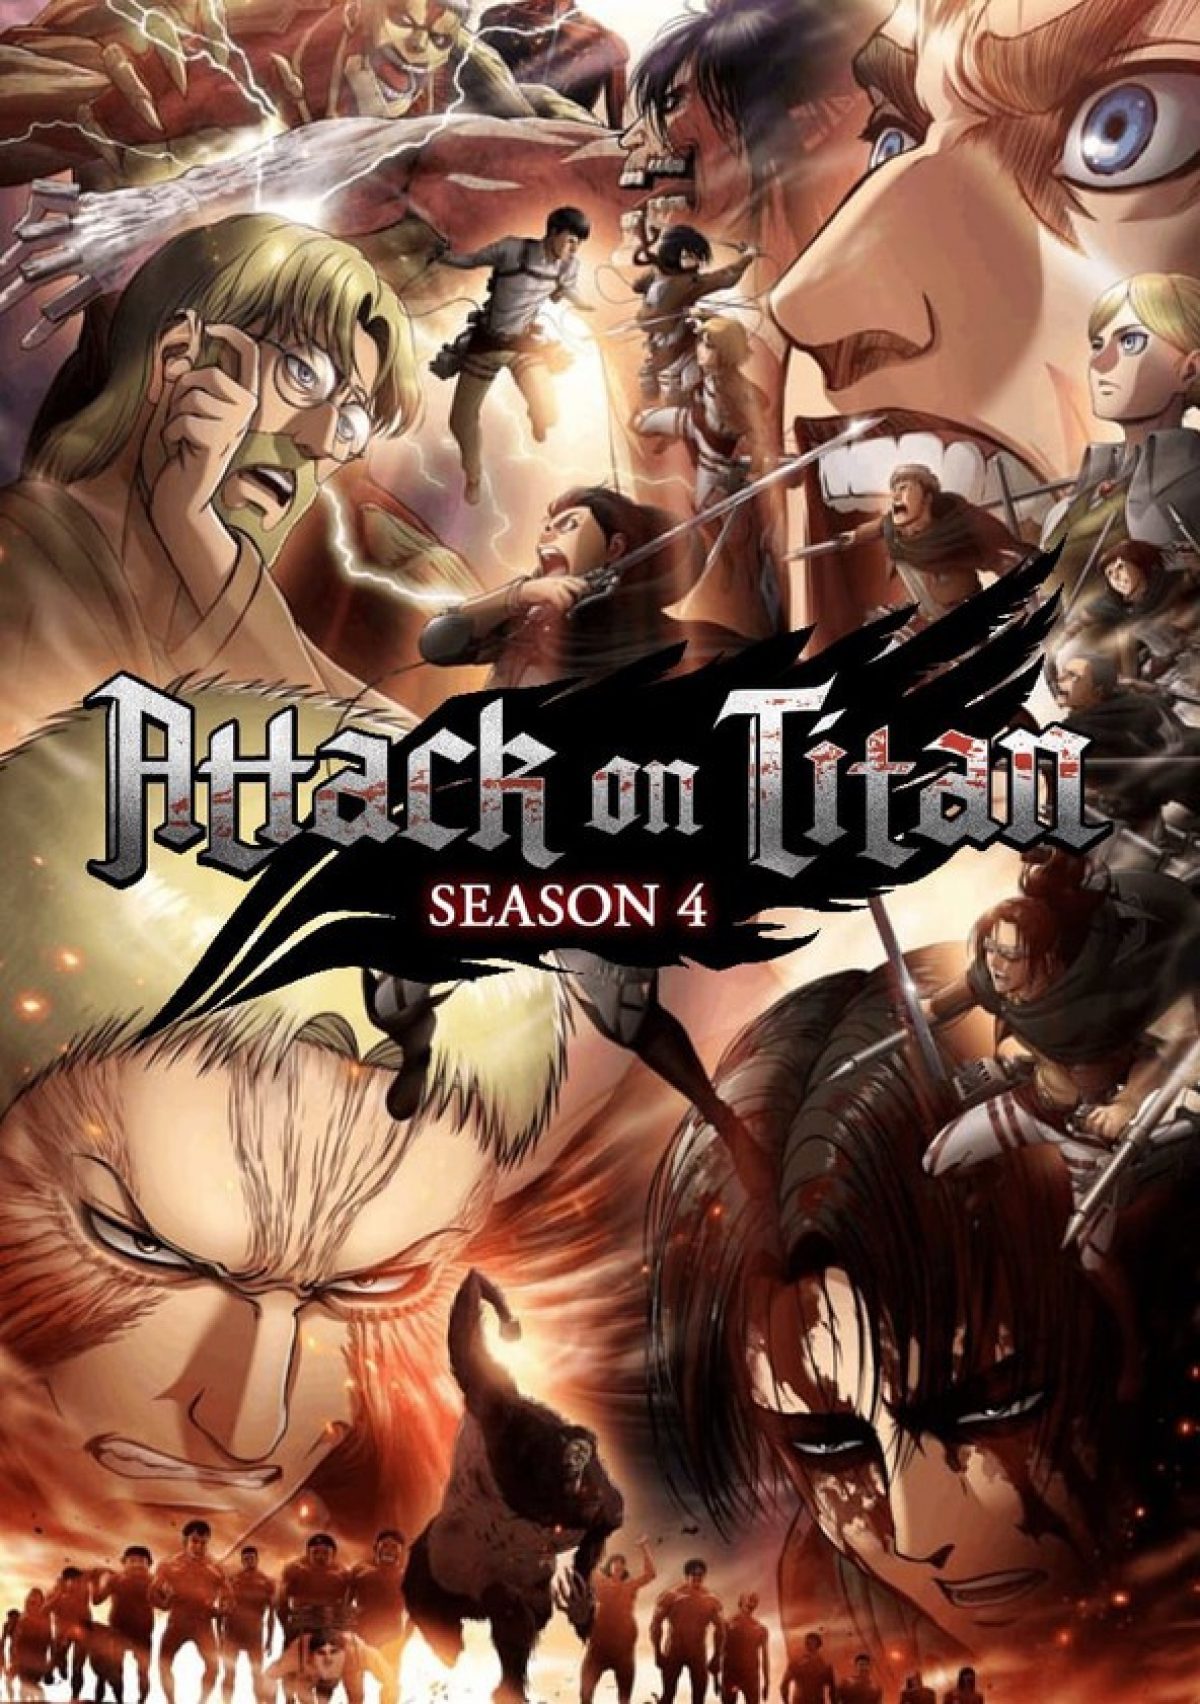 Attack on titan season 4 release date